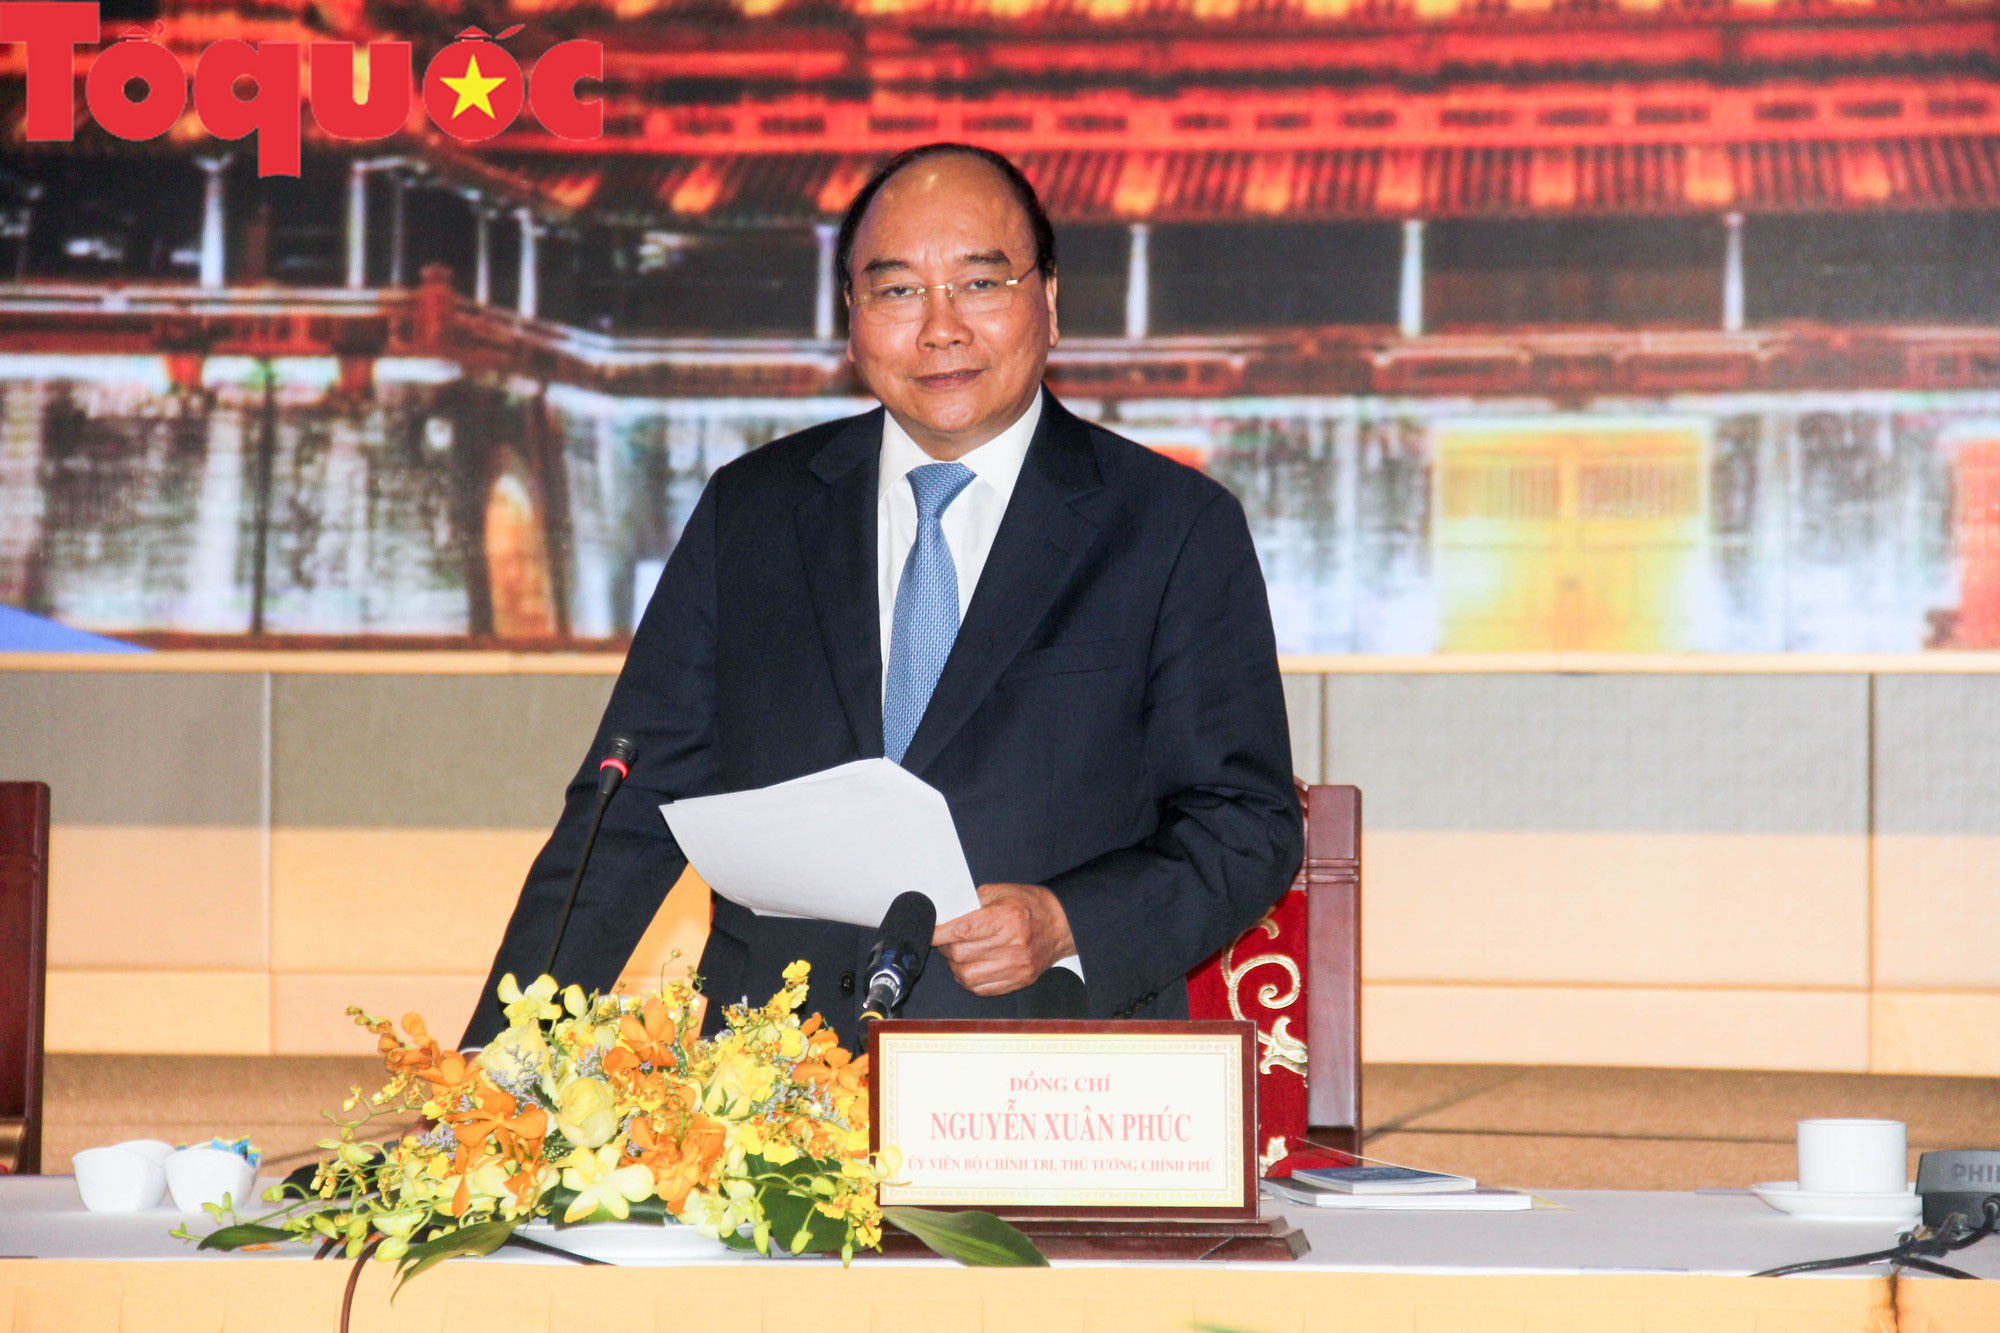 Thủ tướng Nguyễn Xuân Phúc: Các tỉnh miền Trung cần tự lực, tự cường đi trên đôi chân của mình - Ảnh 1.